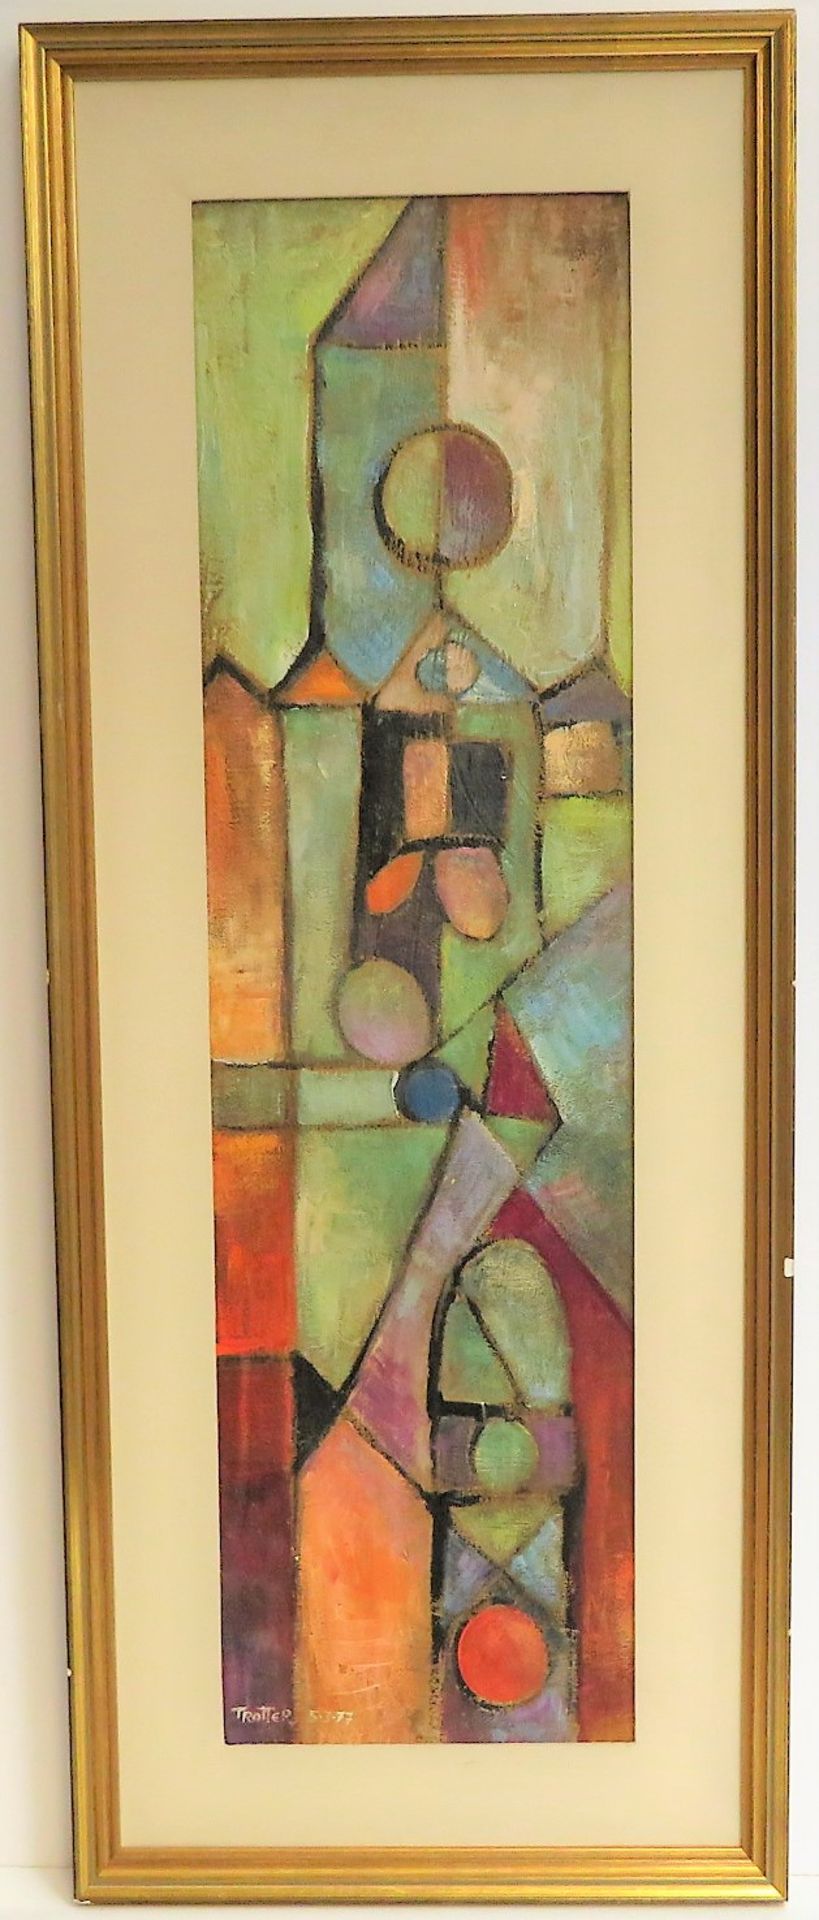 Trotter, "Moderne Komposition", li.u.sign.u.dat. (19)77, Öl/Malerpappe, 68 x 18,5 cm, R. [82 x 32,5